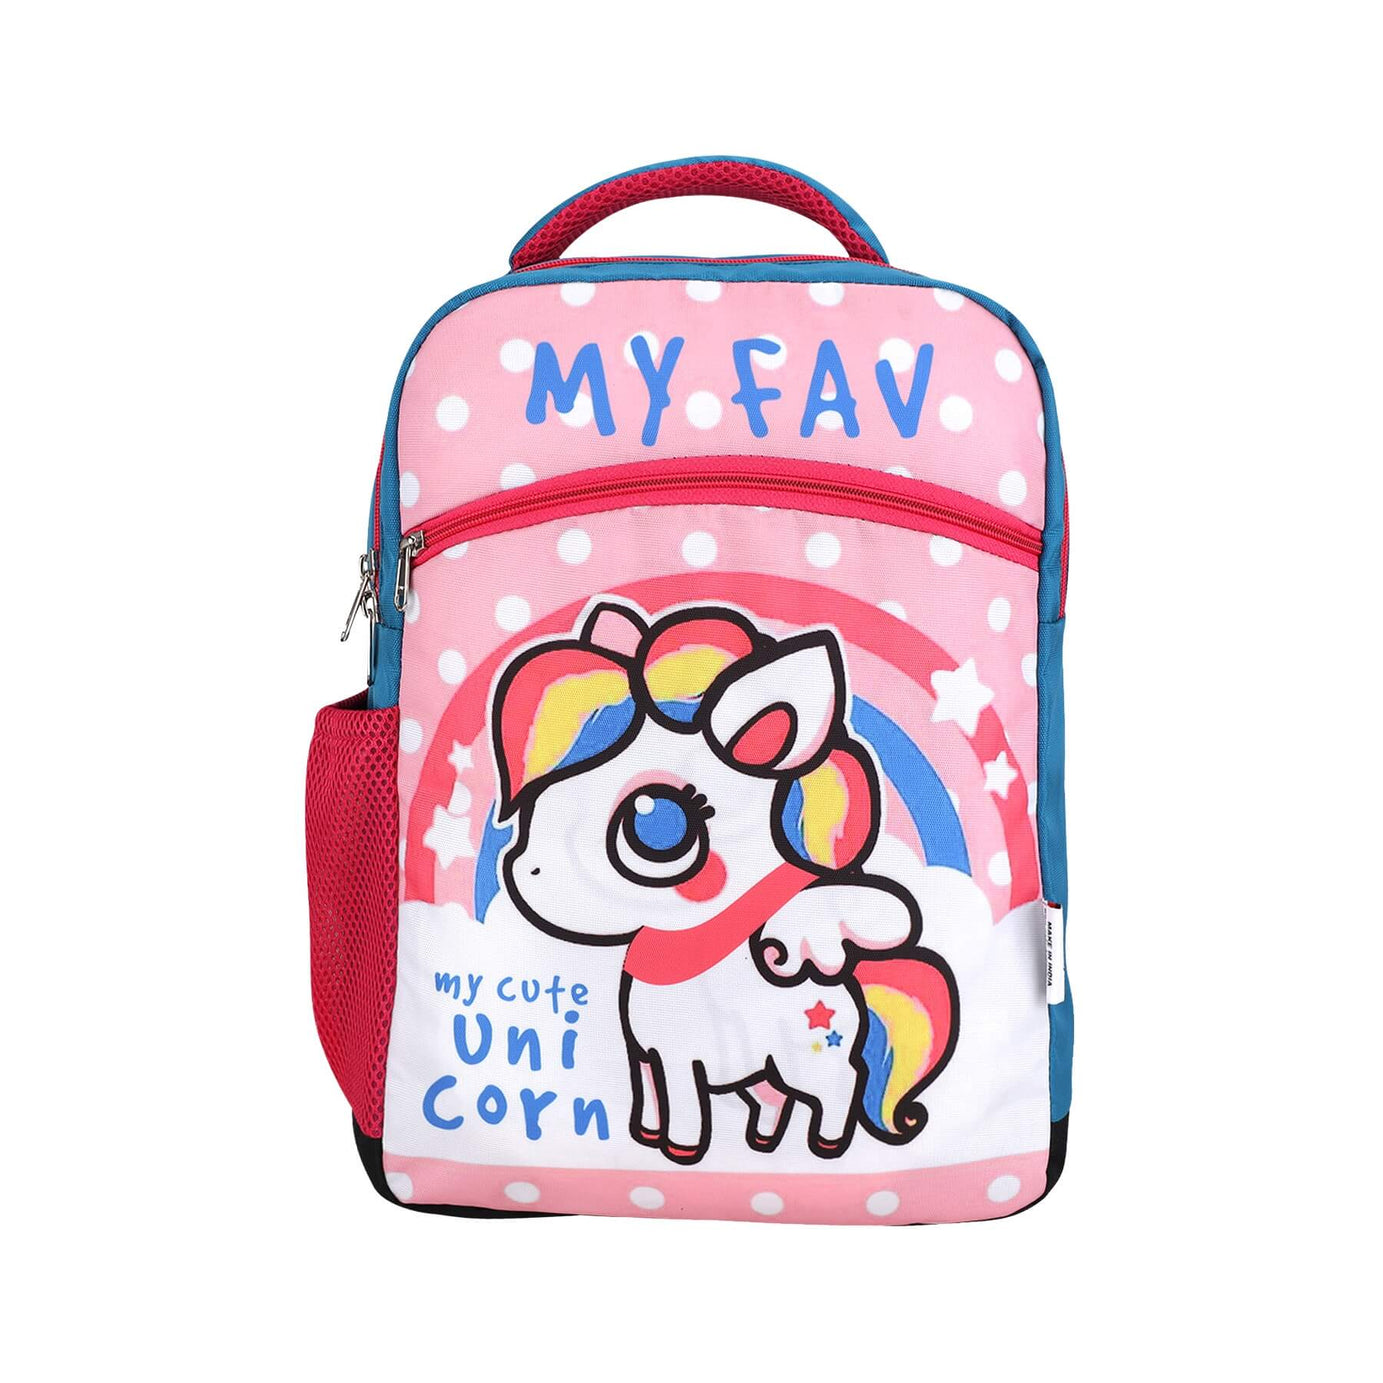 My fav Cute Unicorn School Bag For Girls/Boys, School, Casual, Picnic, Nursery-(2 to 10 year Old Kid)